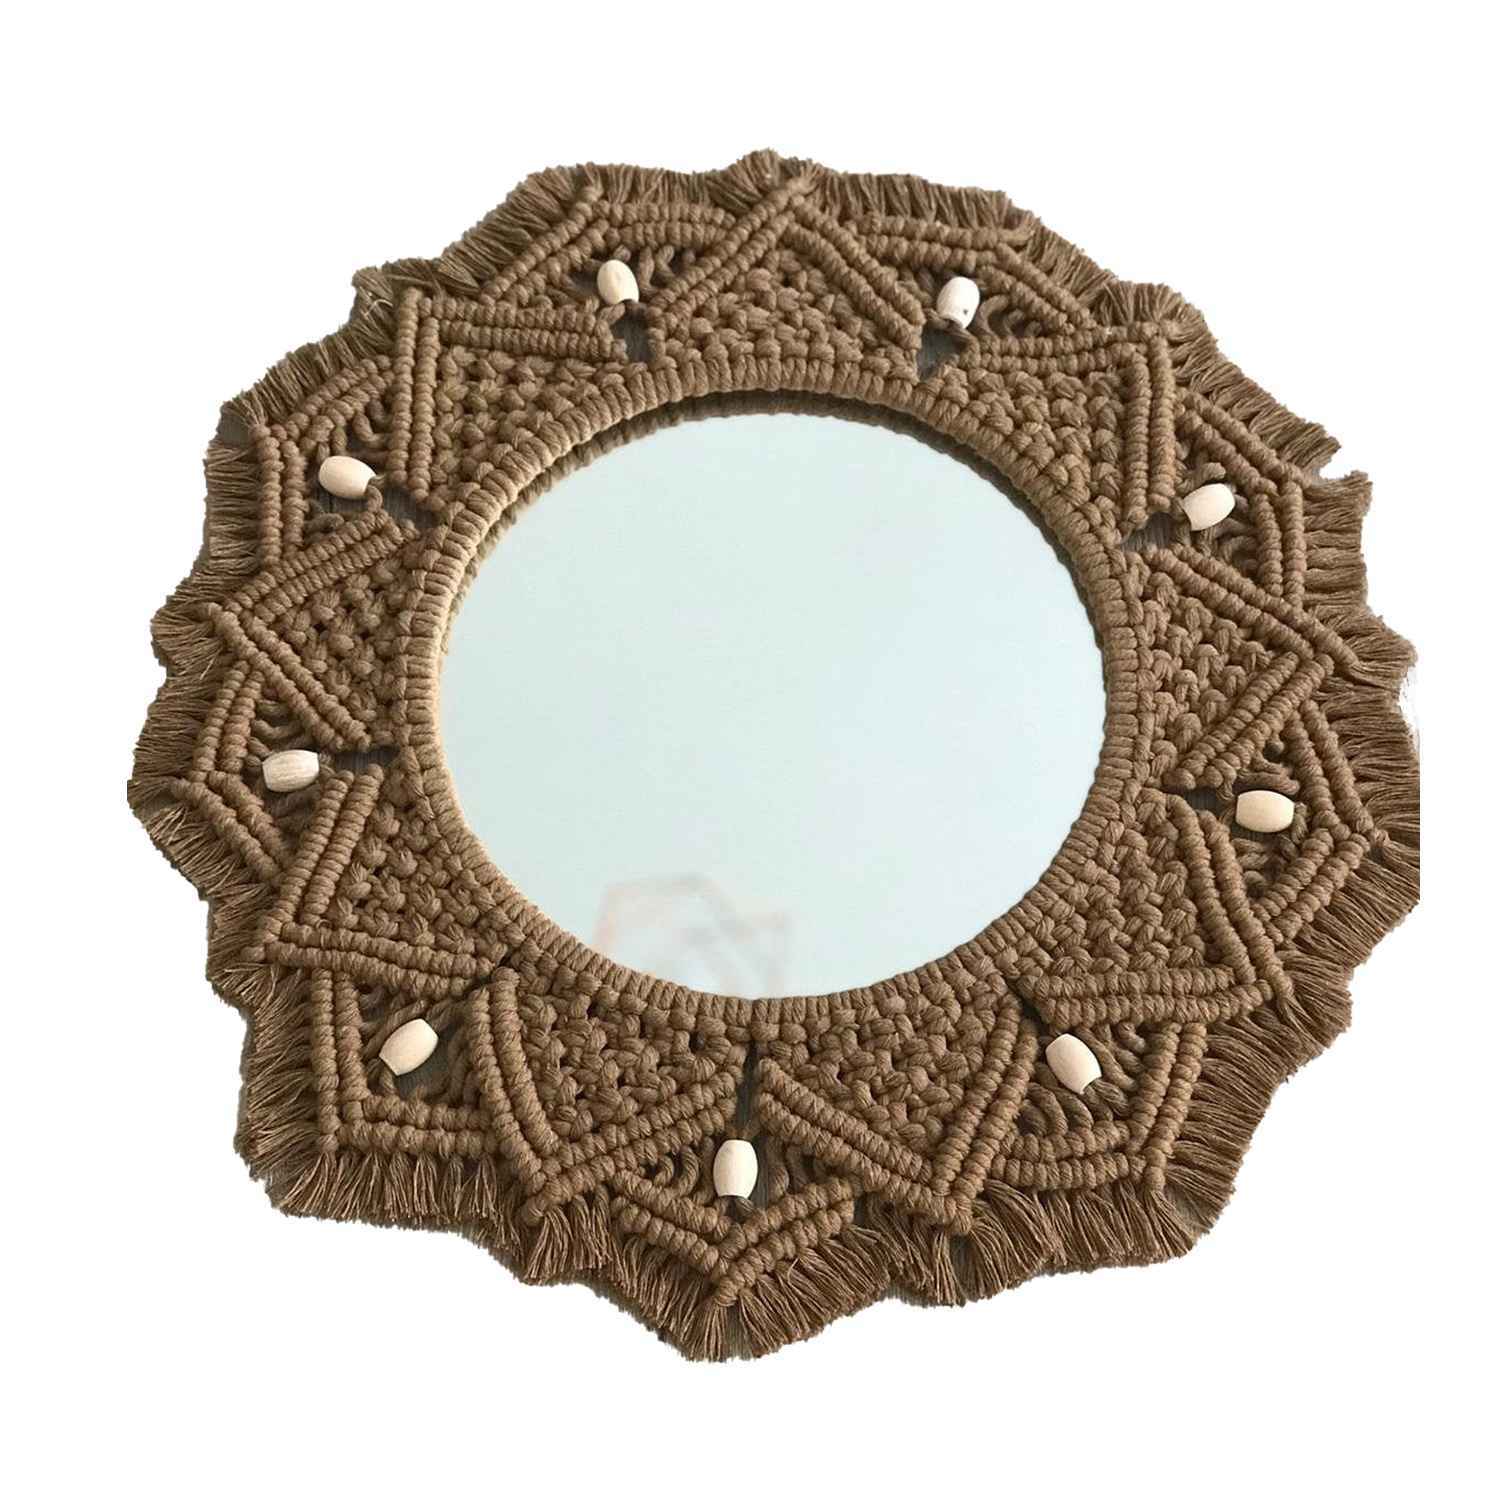 Kaahira Macrame Wall Mirror - Set of 3